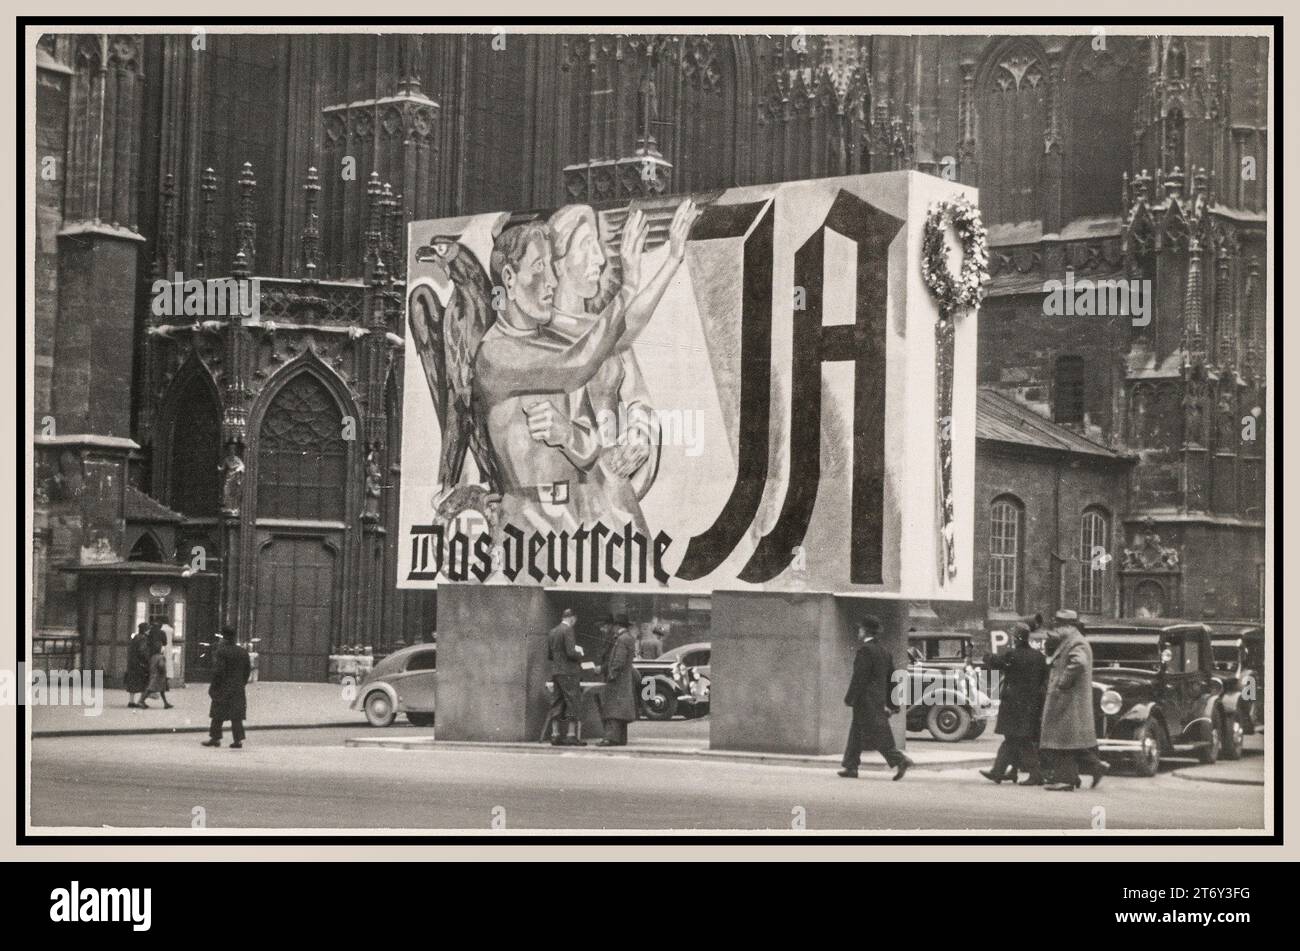 1938 ANSCHLUSS VIENNE Allemagne nazie Grande affiche électorale de propagande avec l'aigle allemand agrippant la Swastika nazie et deux personnes donnant le salut Heil Hitler. Sous-titré : 'THE GERMAN -YES' Allemagne nazie Anschluss Election Voting Propaganda Poster à l'extérieur de la cathédrale Saint-Étienne de Vienne Banque D'Images